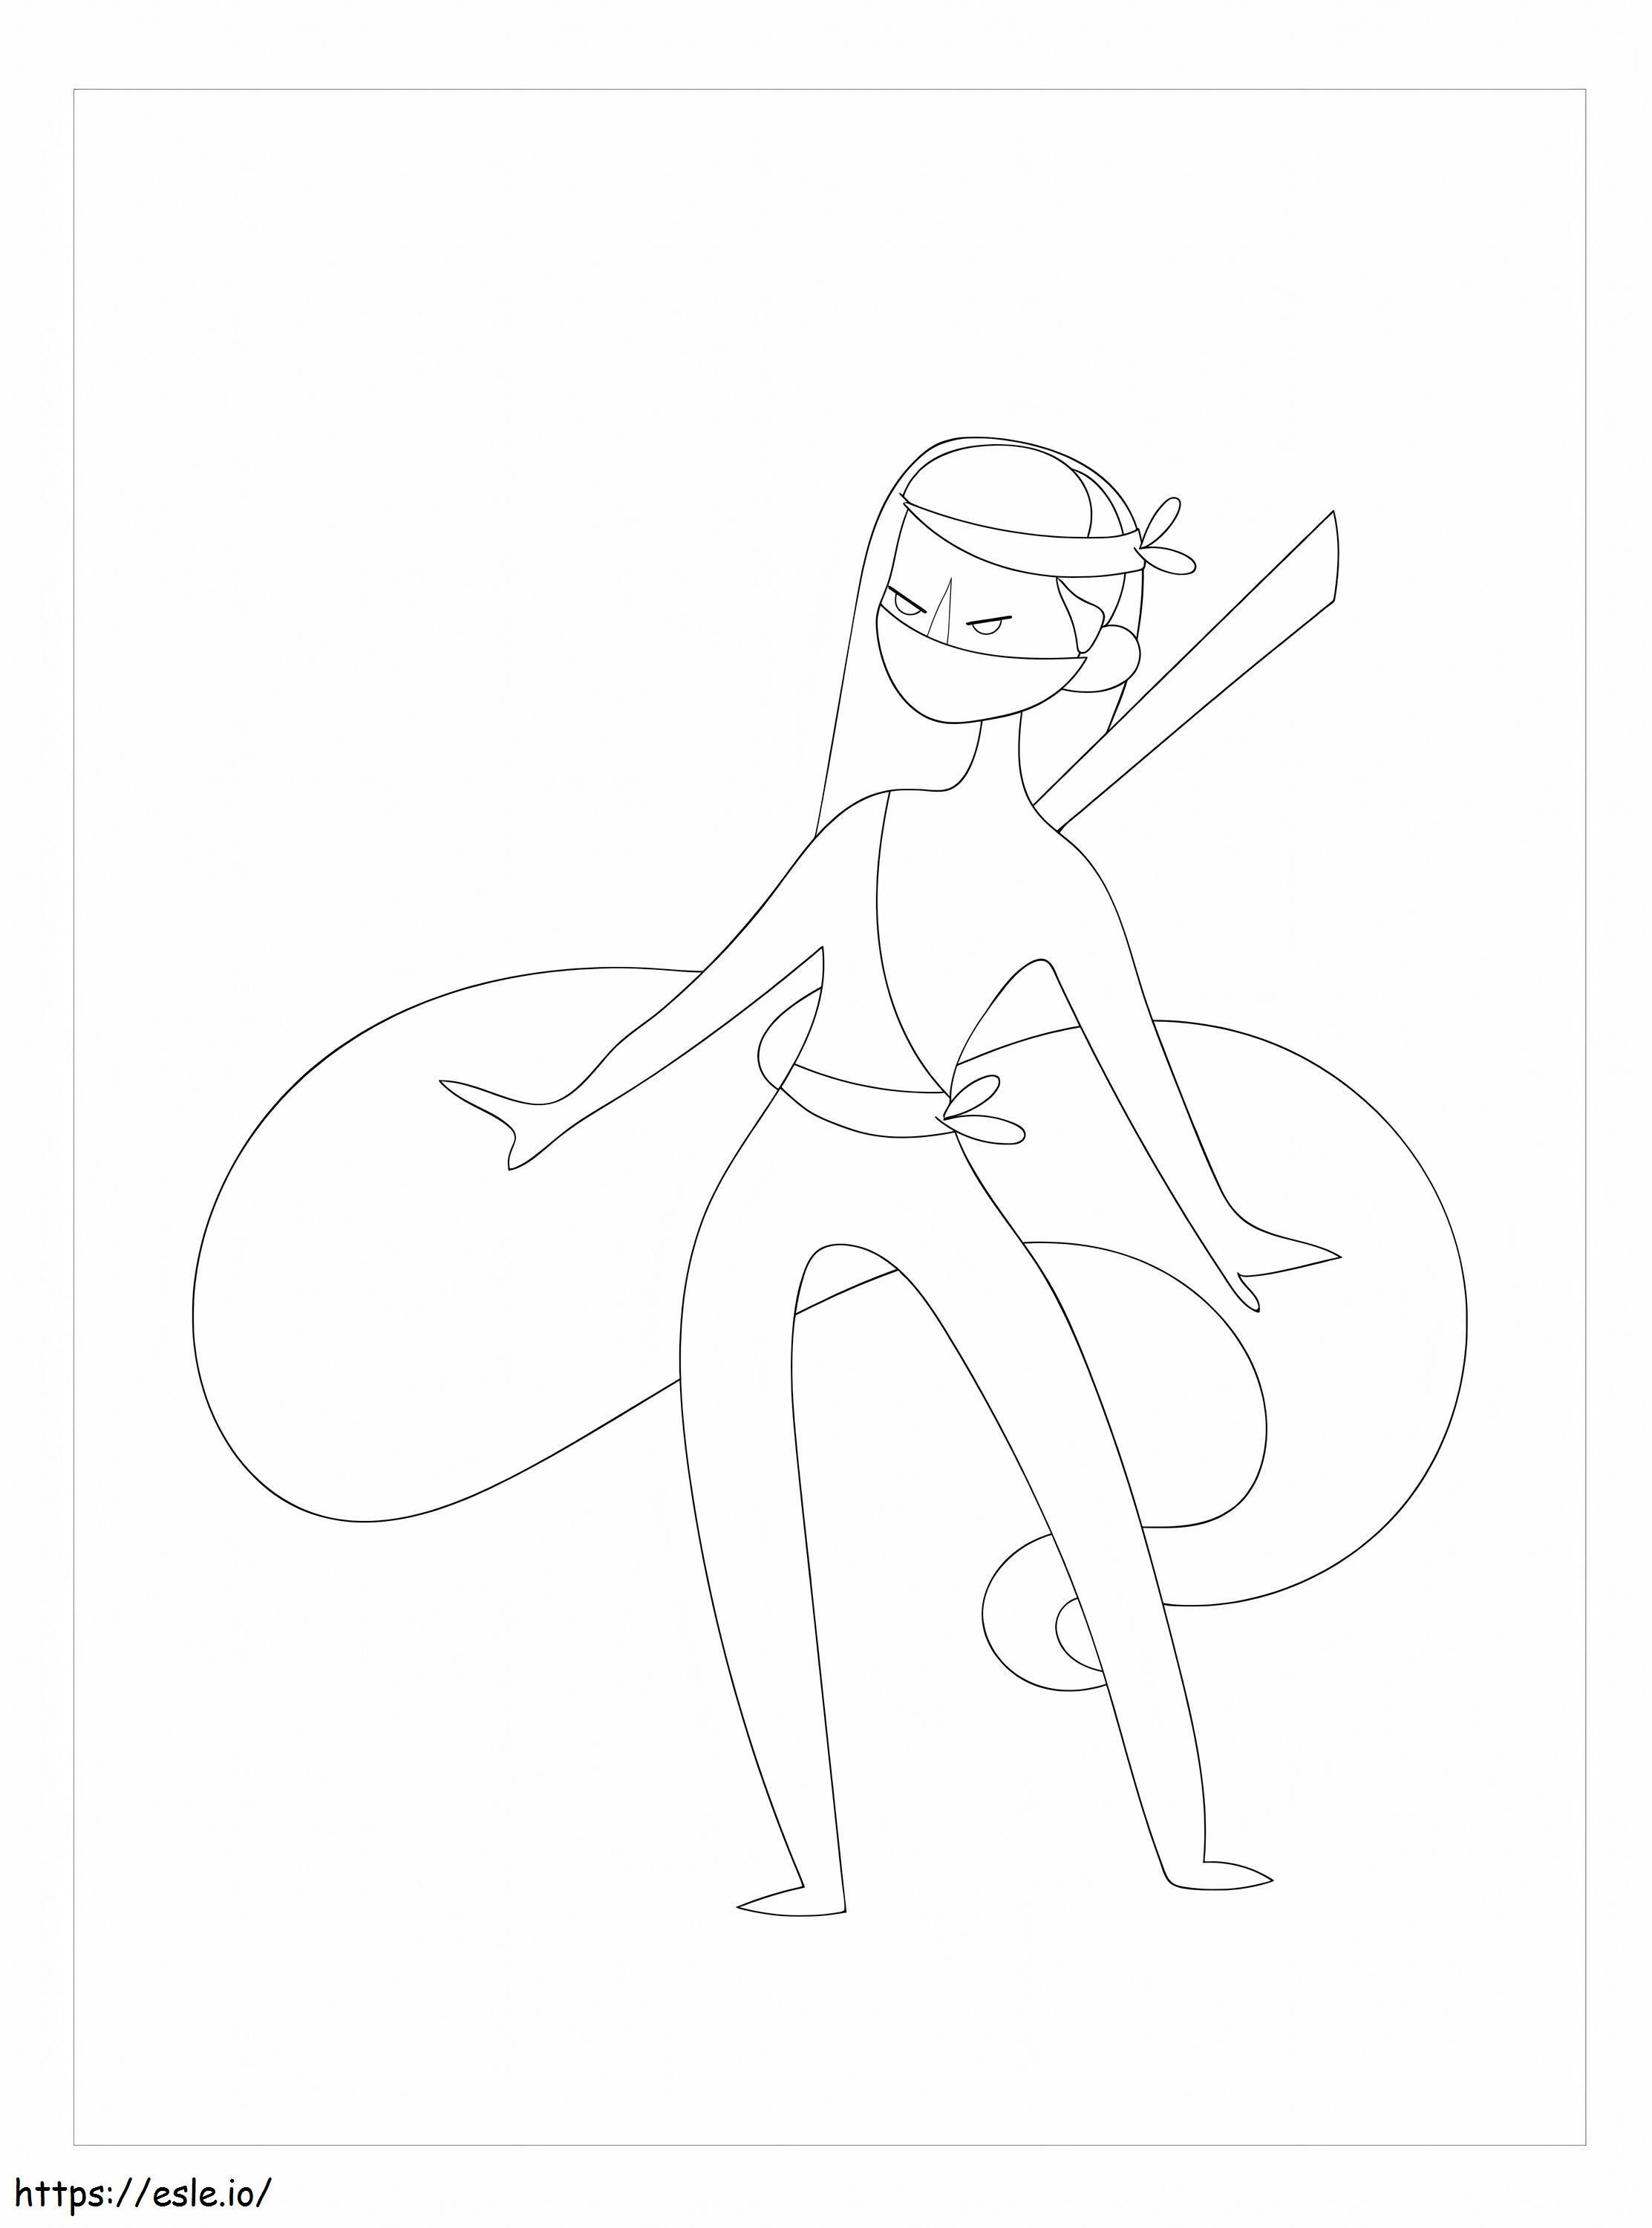 Female Samurai coloring page